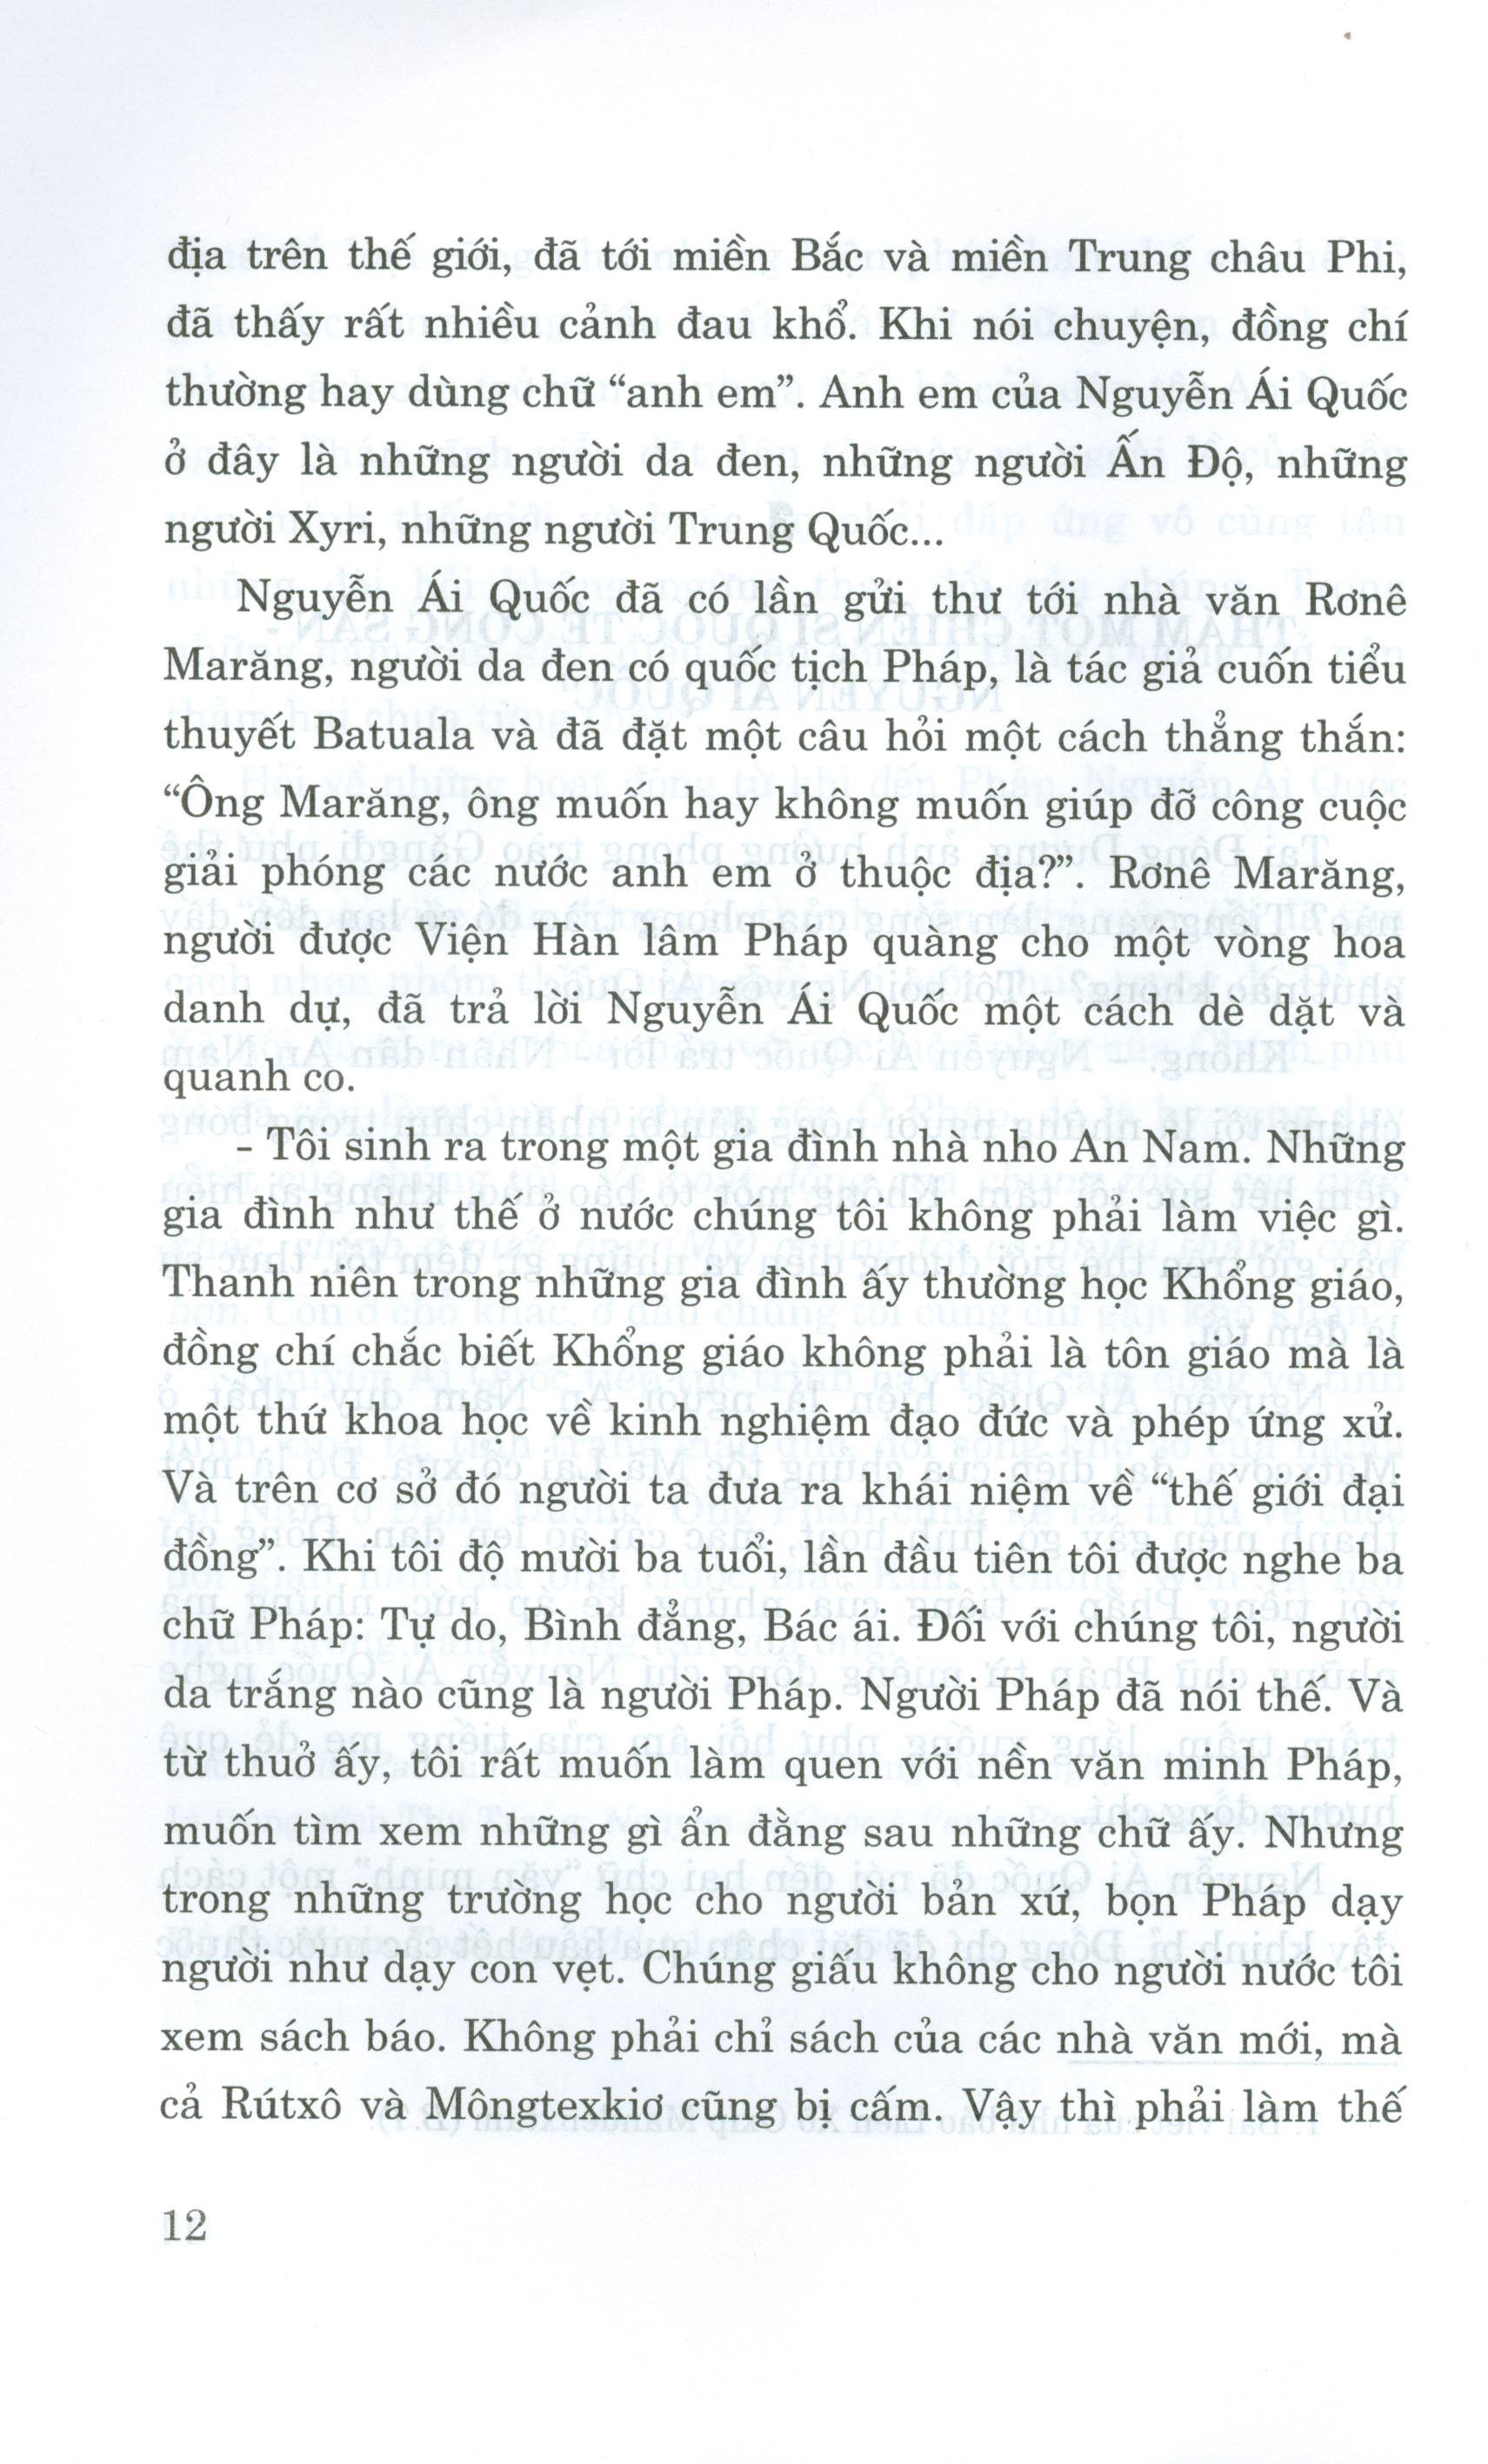 Nghệ Thuật Trả Lời Phỏng Vấn Của Chủ Tịch Hồ Chí Minh